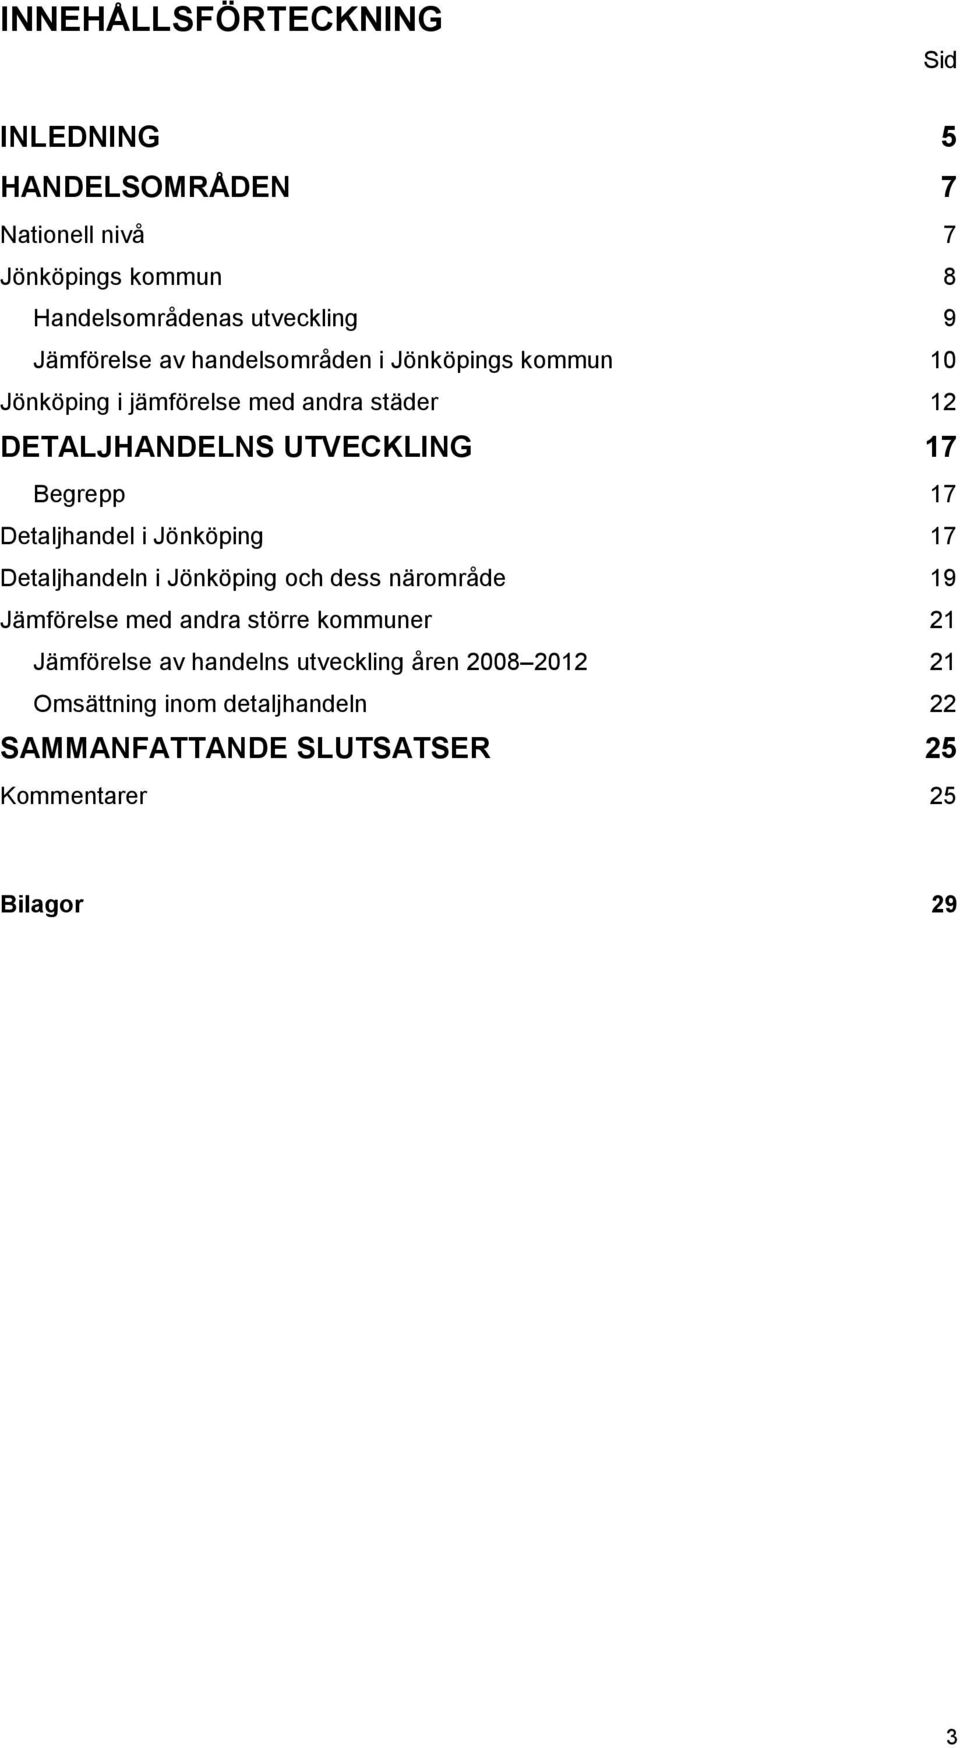 Begrepp 17 Detaljhandel i Jönköping 17 Detaljhandeln i Jönköping och dess närområde 19 Jämförelse med andra större kommuner 21